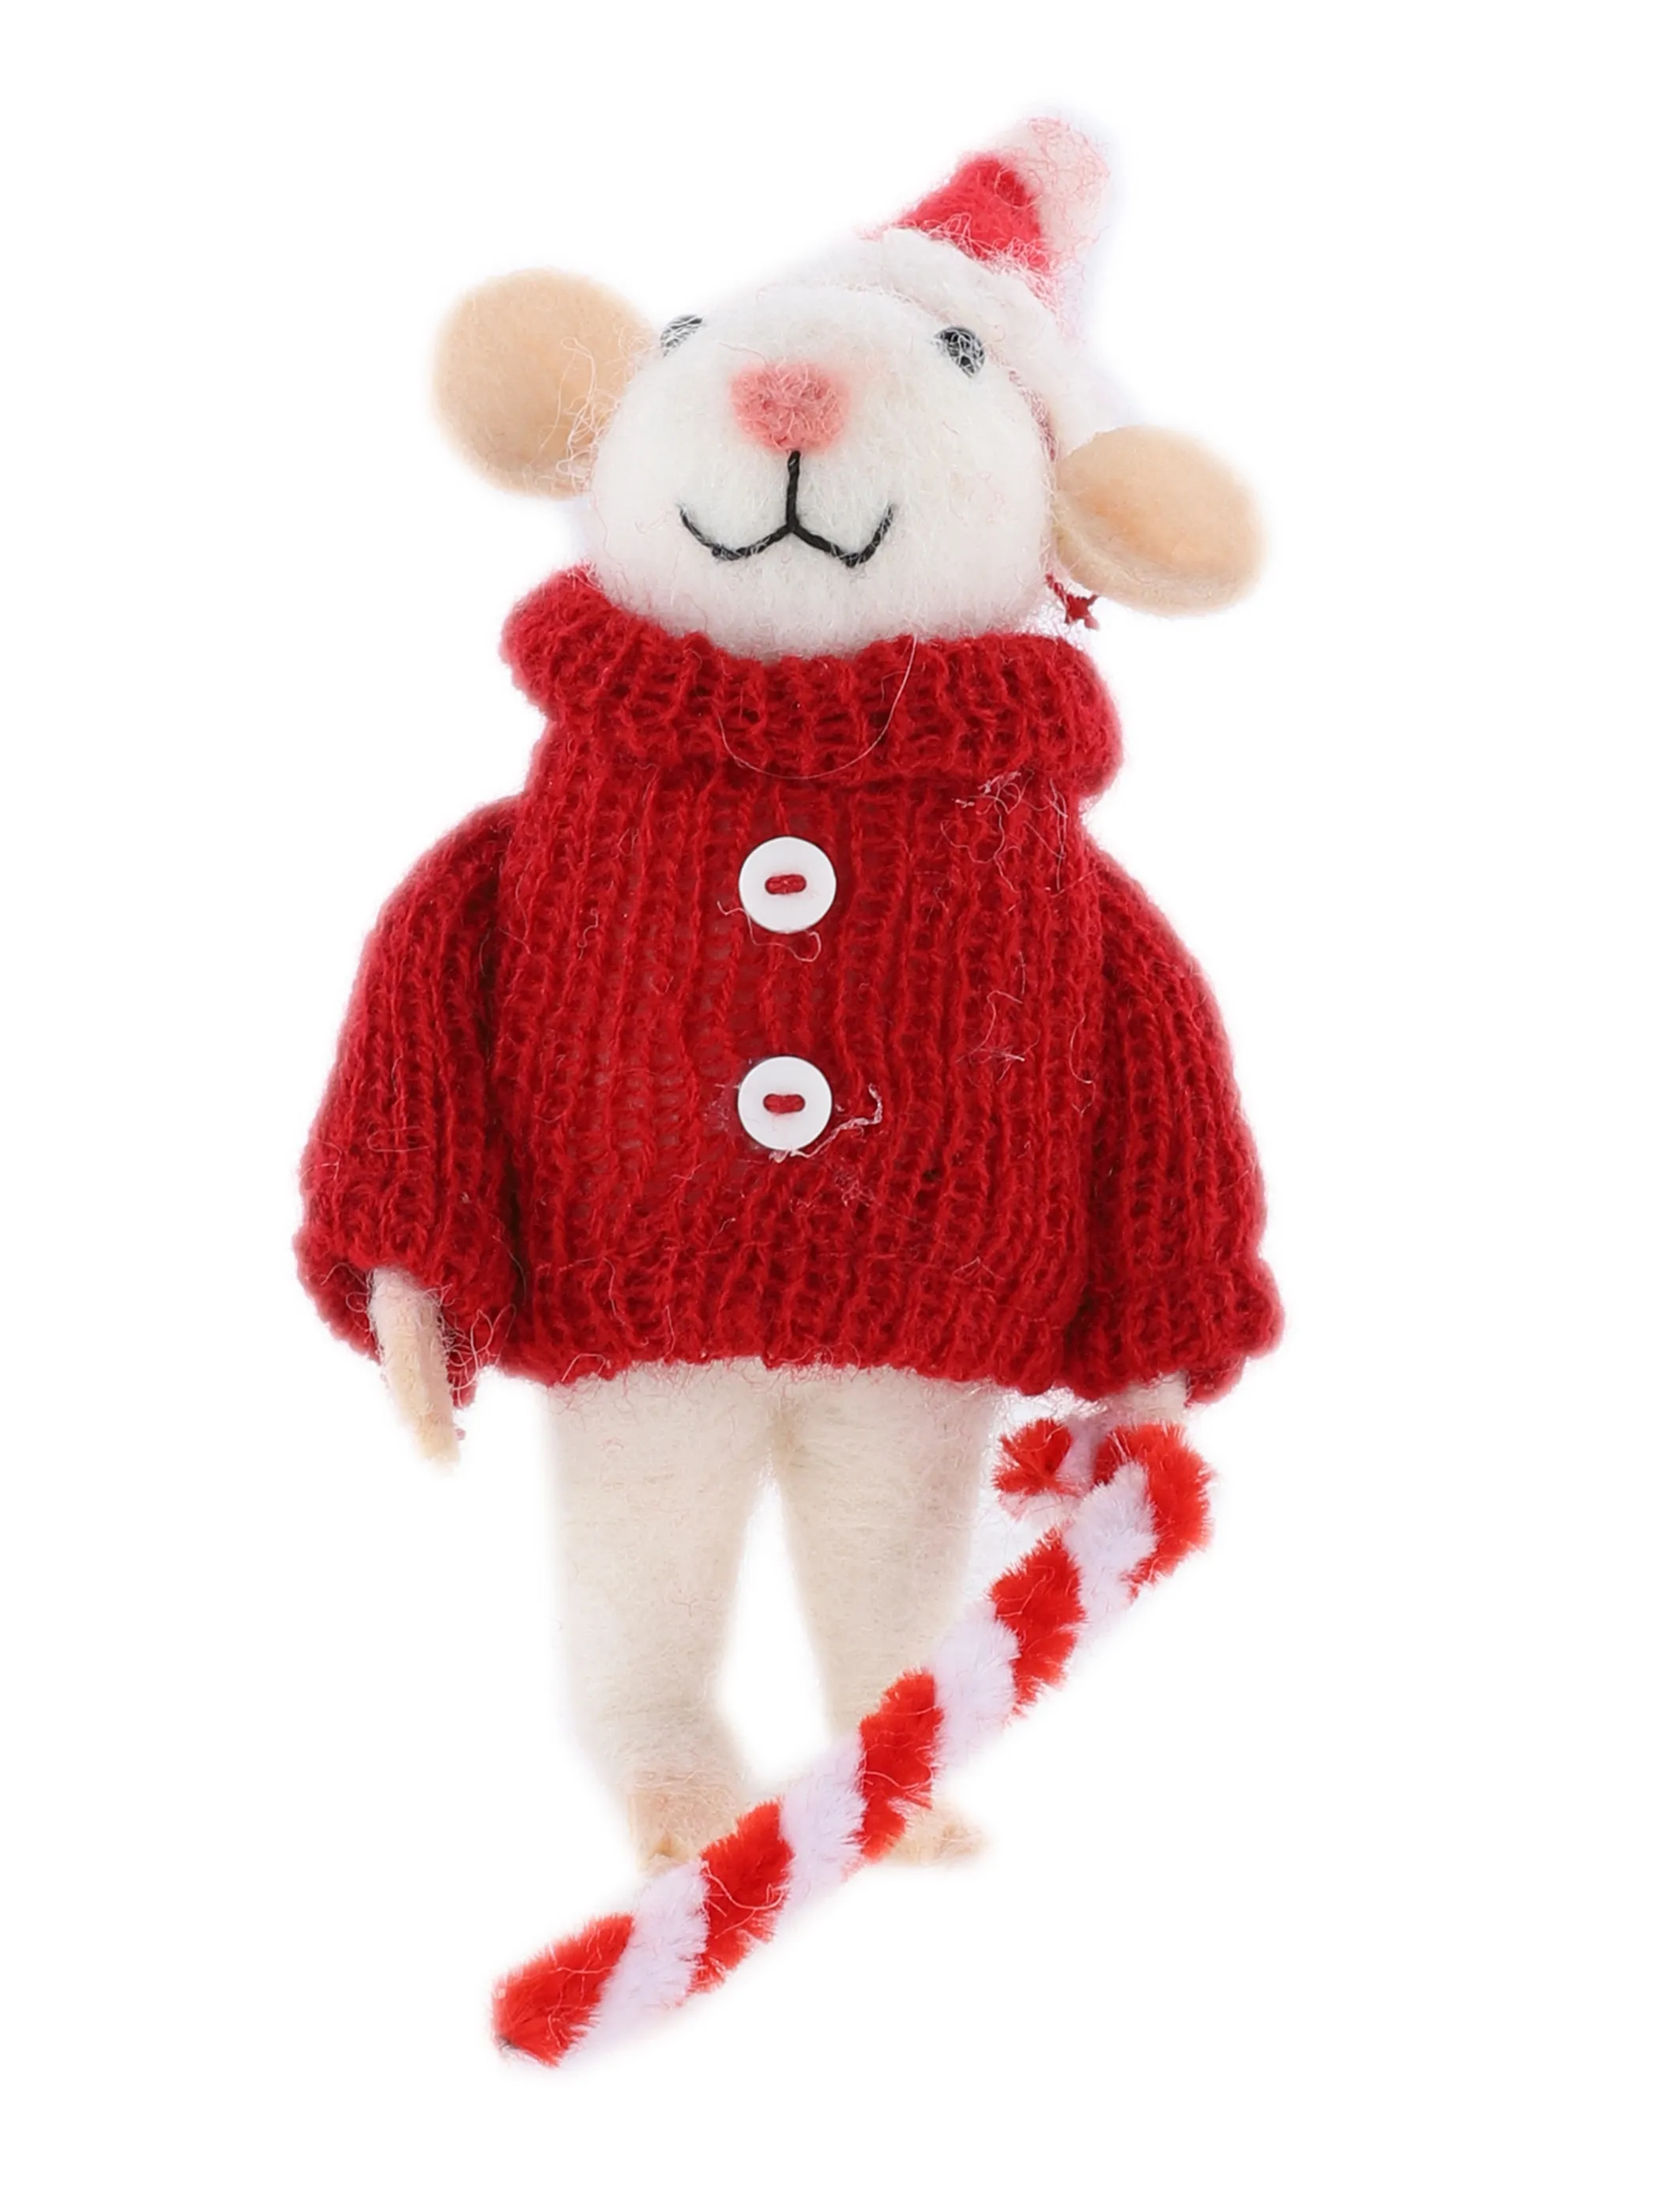 Weihnachten Mäuse Herr H 13,5 cm Rot 866251 ROT/WEIß 1